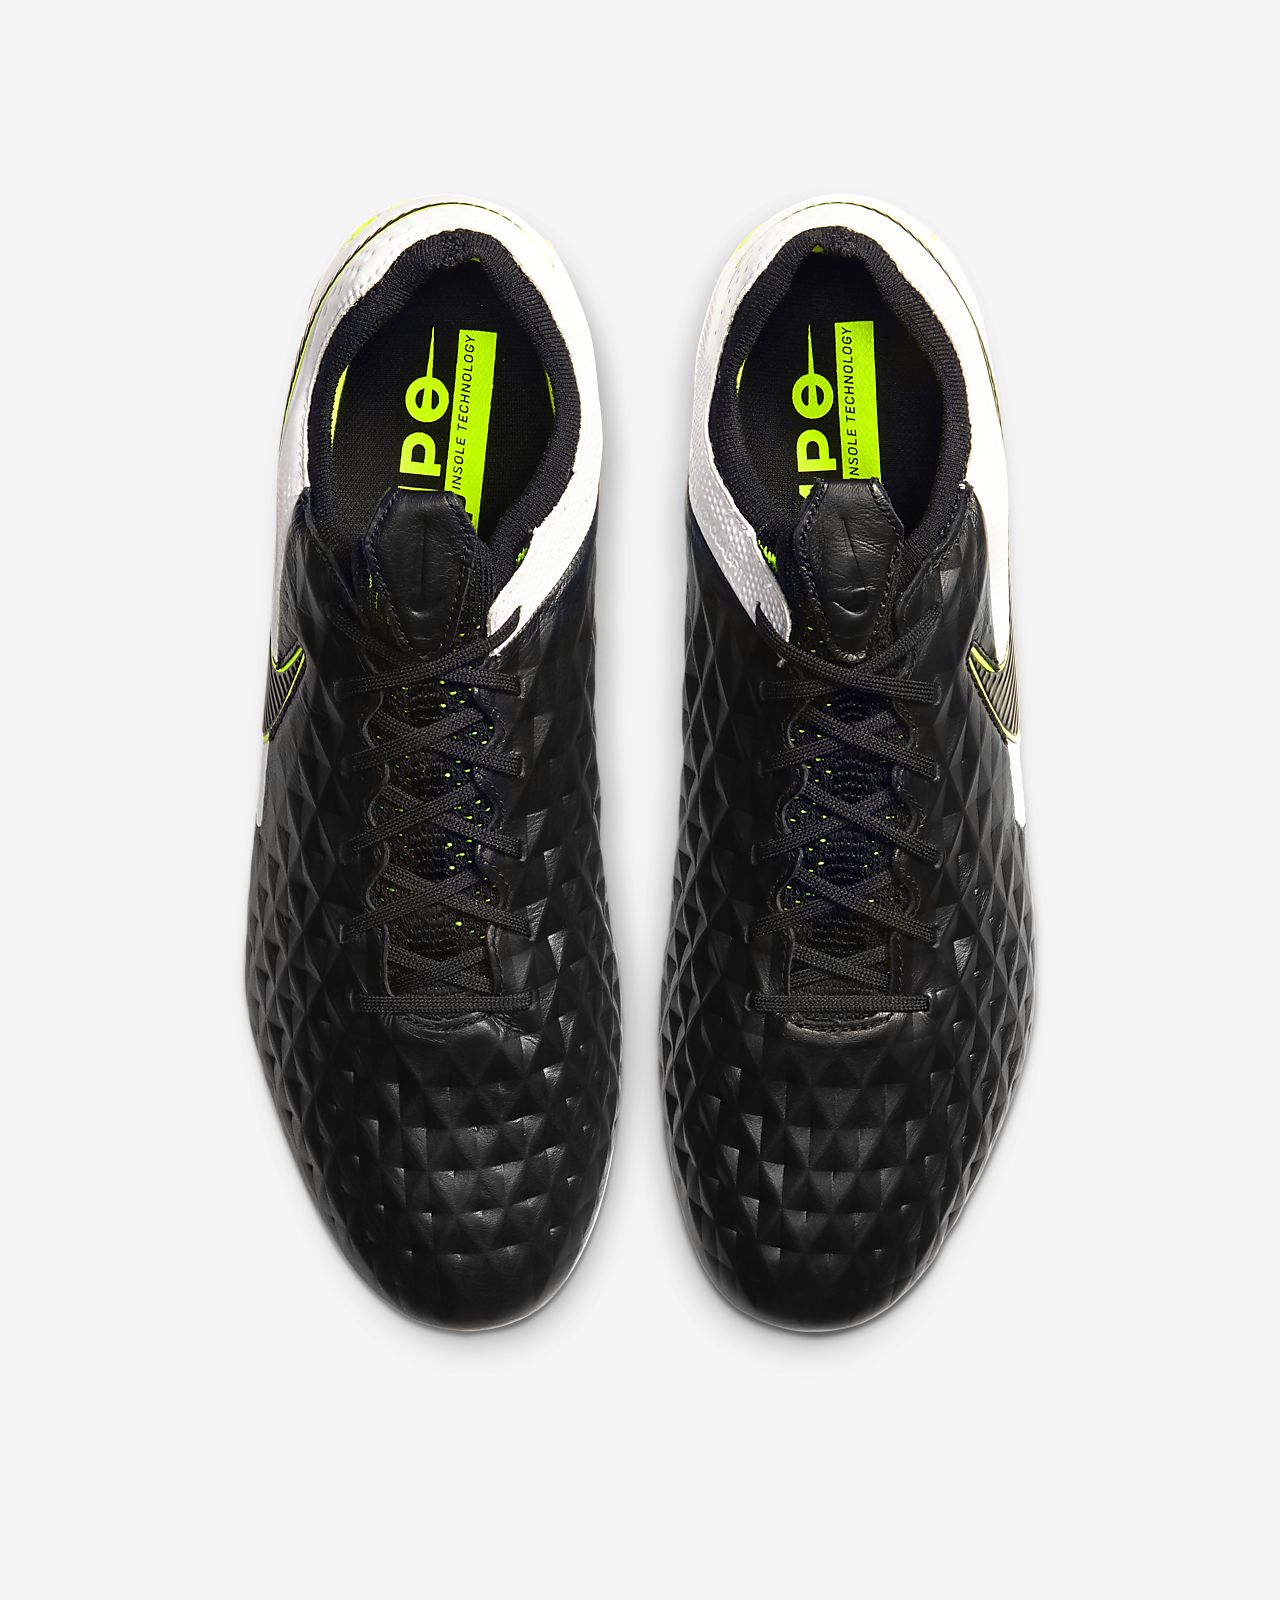 Nike Tiempo Legend VI Euro 2016 Boot Released Footy